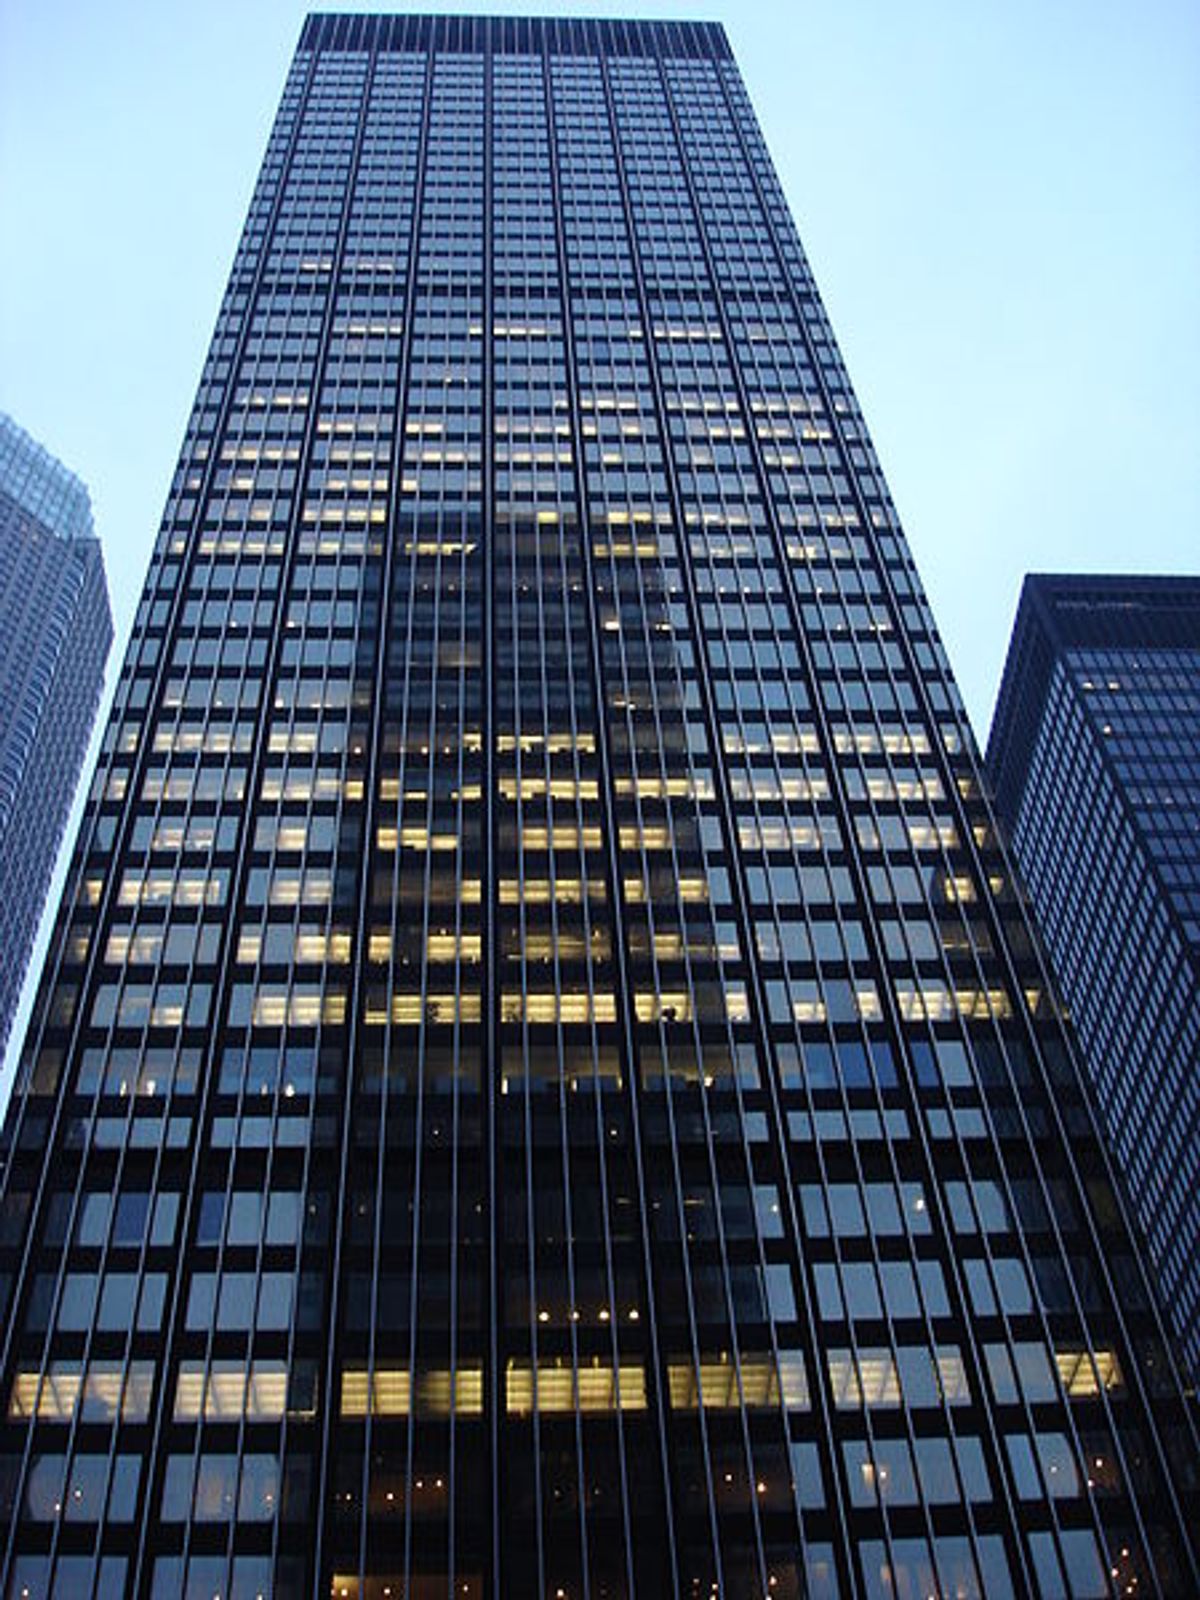  JPMorgan headquarters in New York (Wikimedia)        